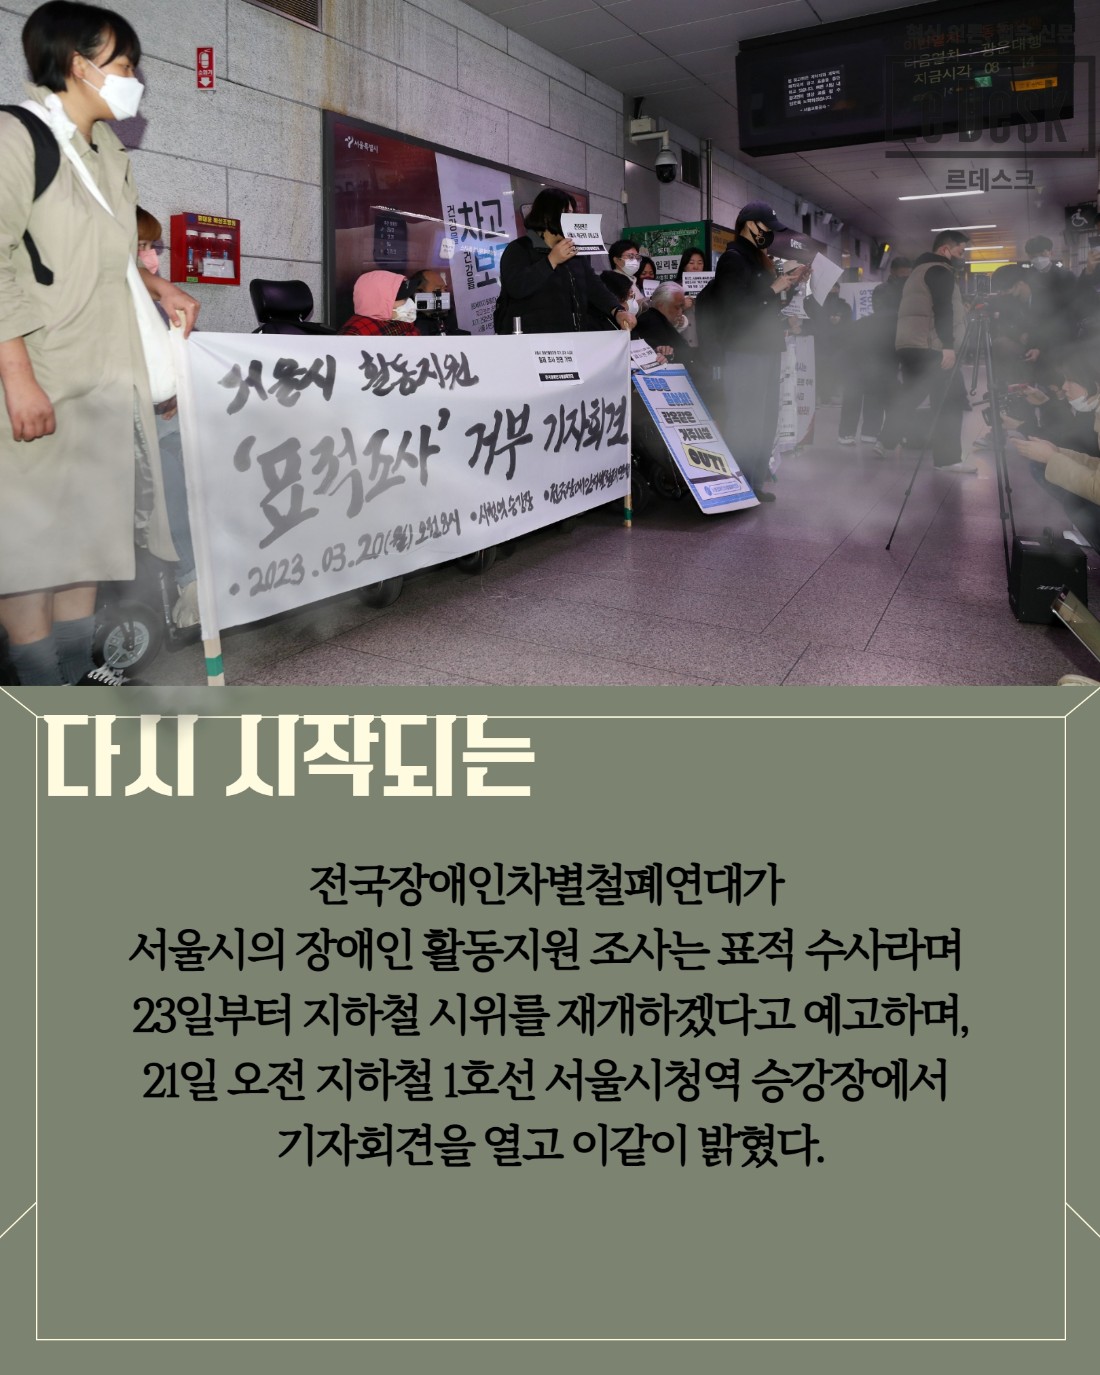 [Le Visual]출근지옥 되풀이 되나…전장연 지하철 시위 재개 예고